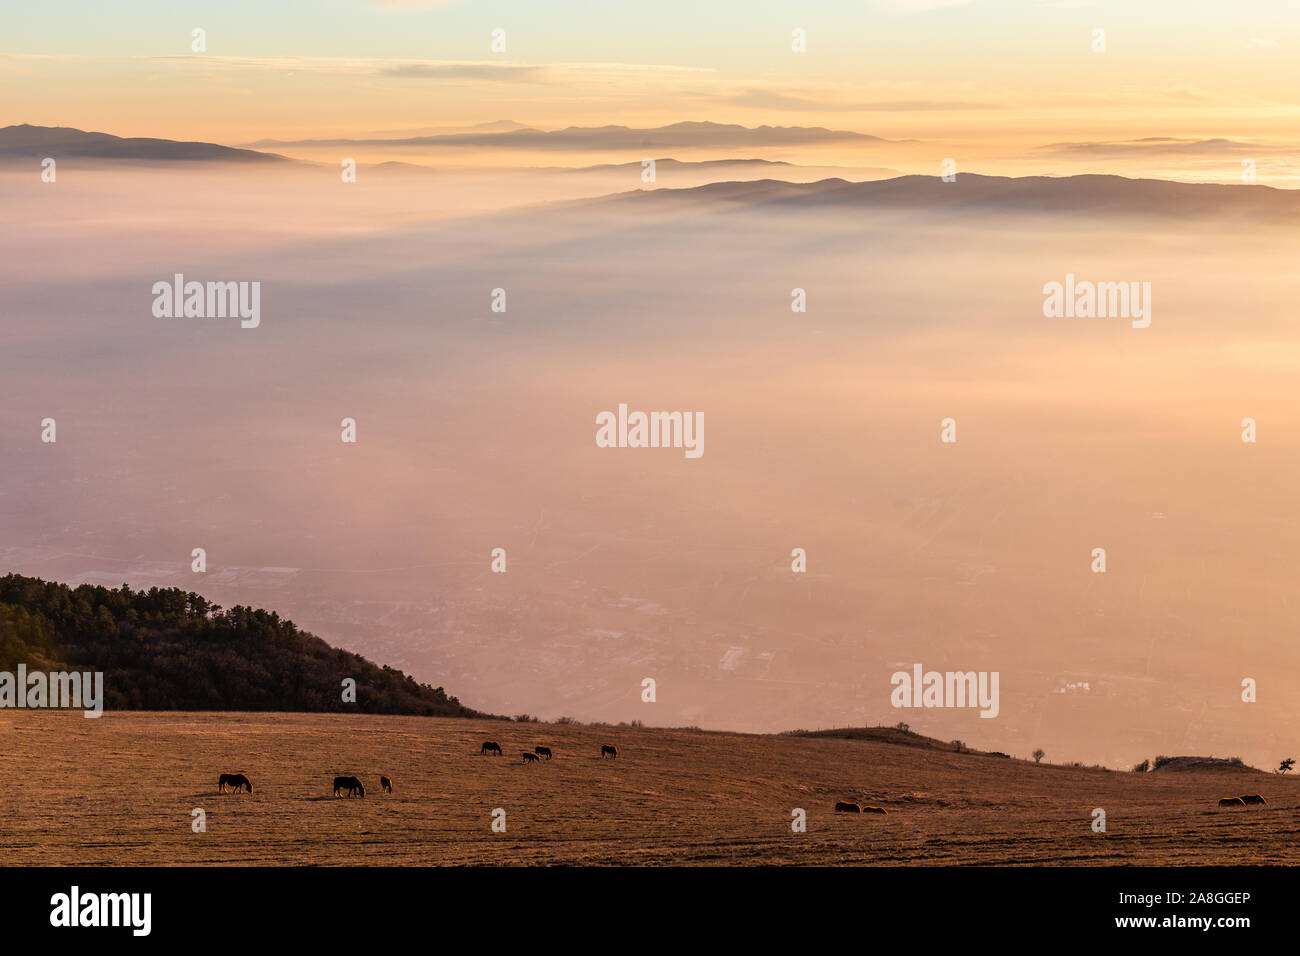 Certains chevaux silhouettes sur le dessus de la montagne Subasio, sur une mer de brume, le remplissage de la vallée de l'Ombrie au coucher du soleil Banque D'Images